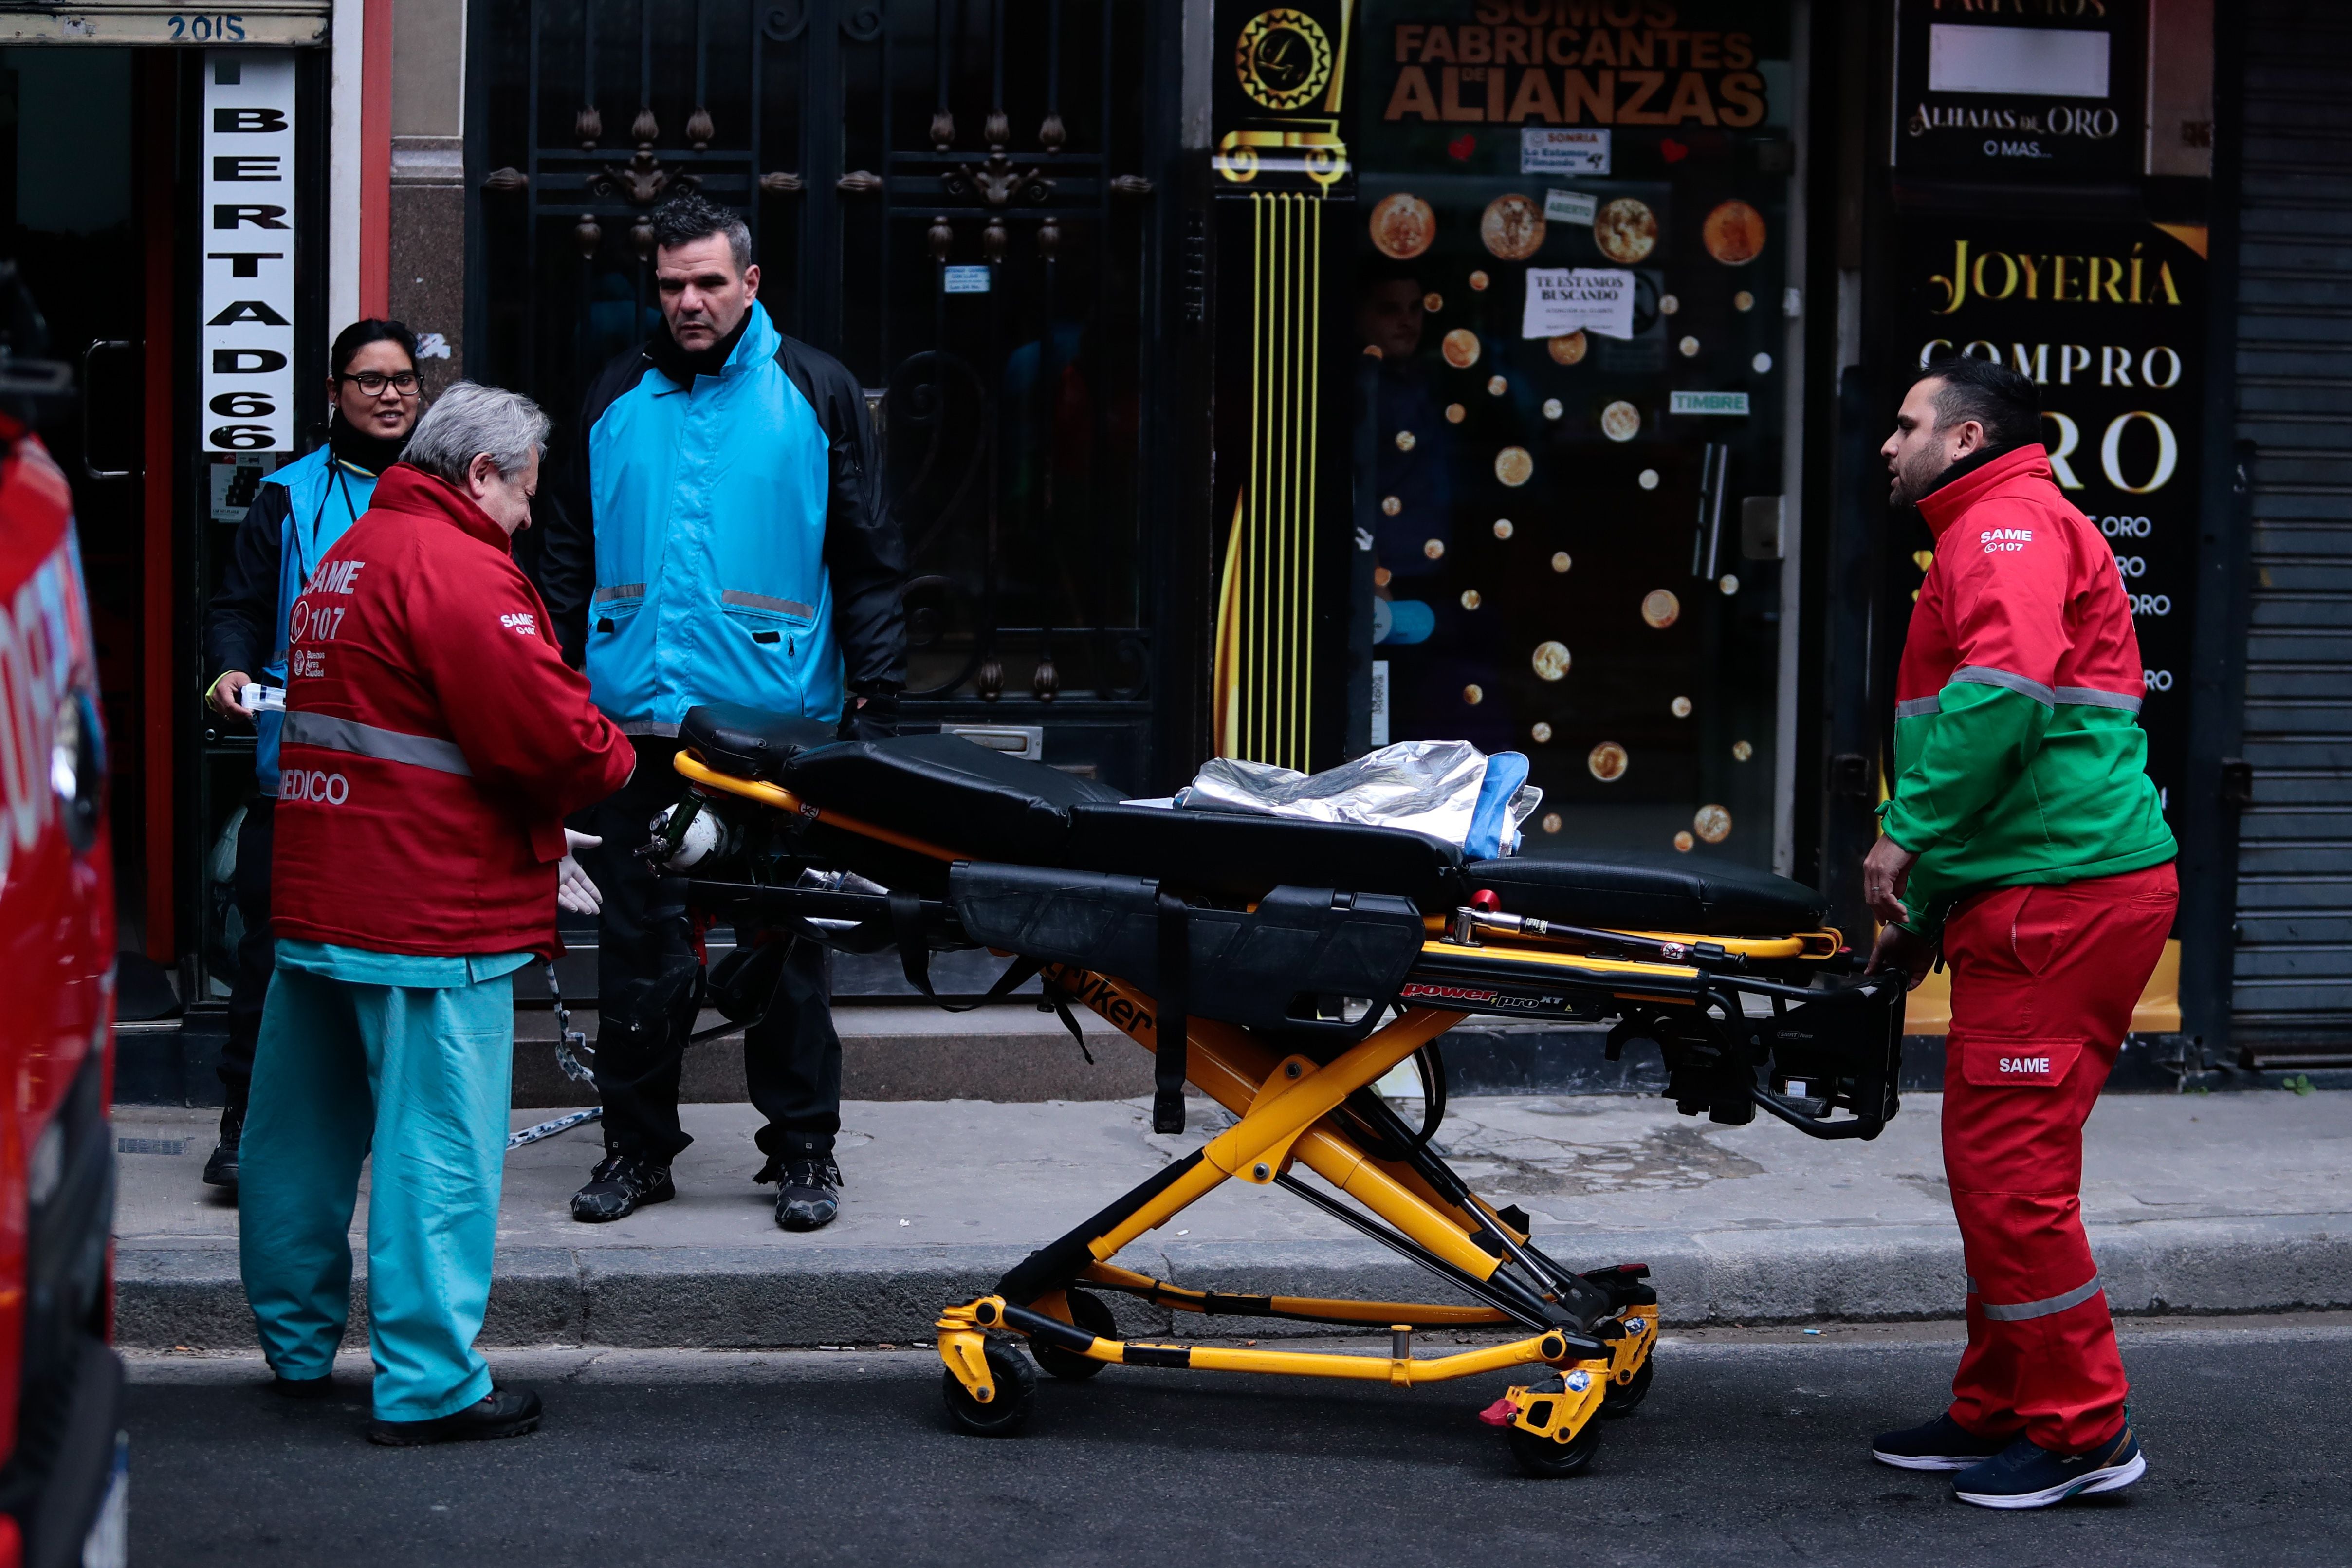 La mujer que saltó por el balcón sufrió heridas en el 70% de su cuerpo. (Foto: Luciano González)